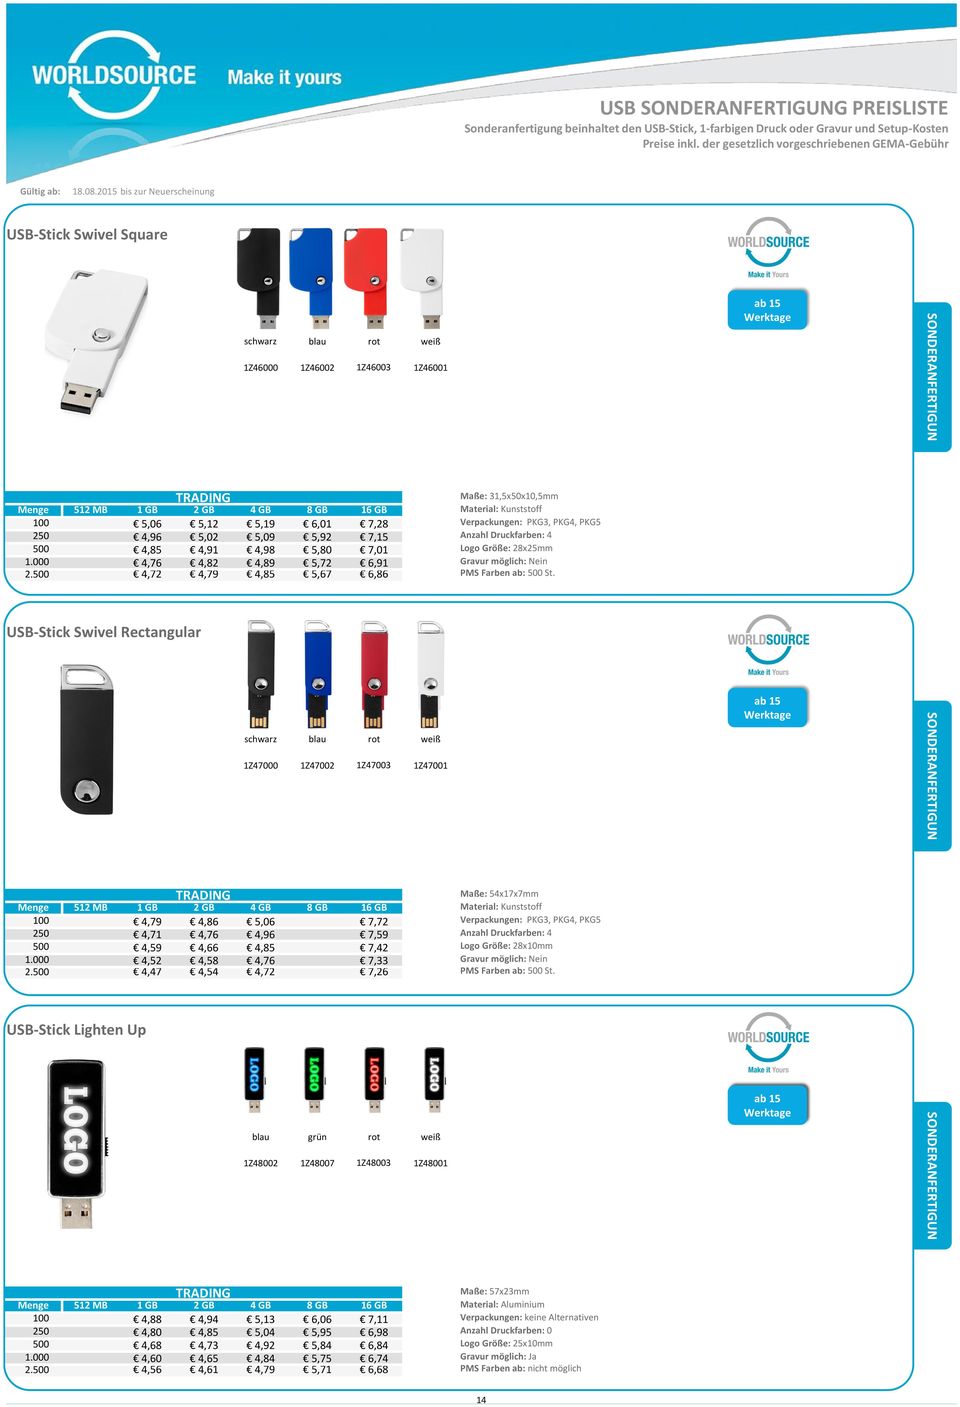 USB-Stick Swivel Rectangular schwarz blau rot weiß 1Z47000 1Z47002 1Z47003 1Z47001 ab 15 Maße: 54x17x7mm 100 4,79 4,86 5,06 7,72 Verpackungen: PKG3, PKG4, PKG5 250 4,71 4,76 4,96 7,59 Anzahl